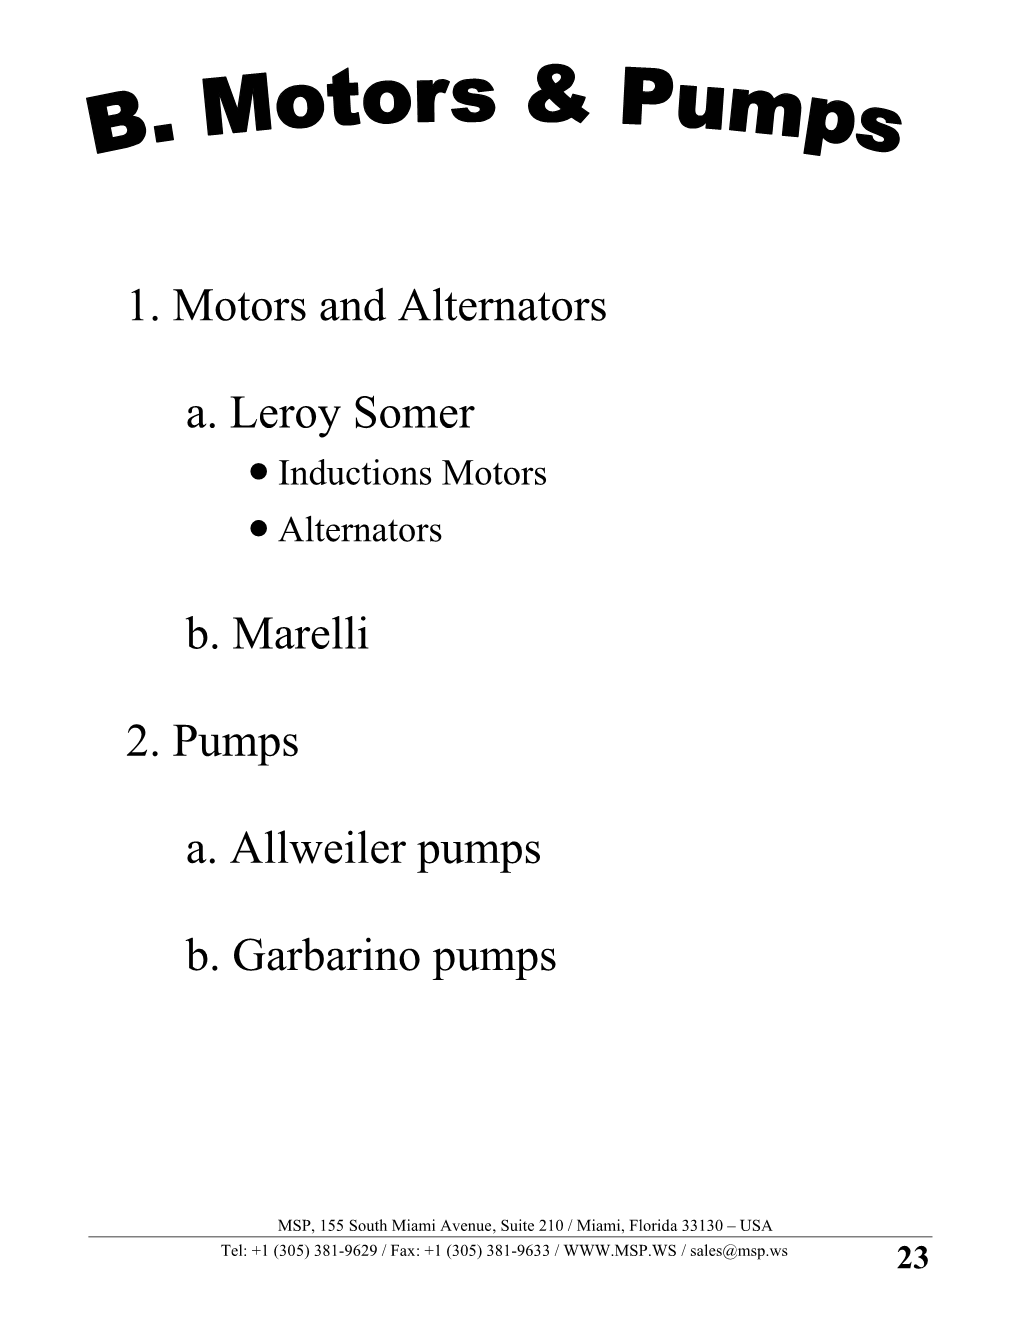 1. Motors and Alternators A. Leroy Somer B. Marelli 2. Pumps A